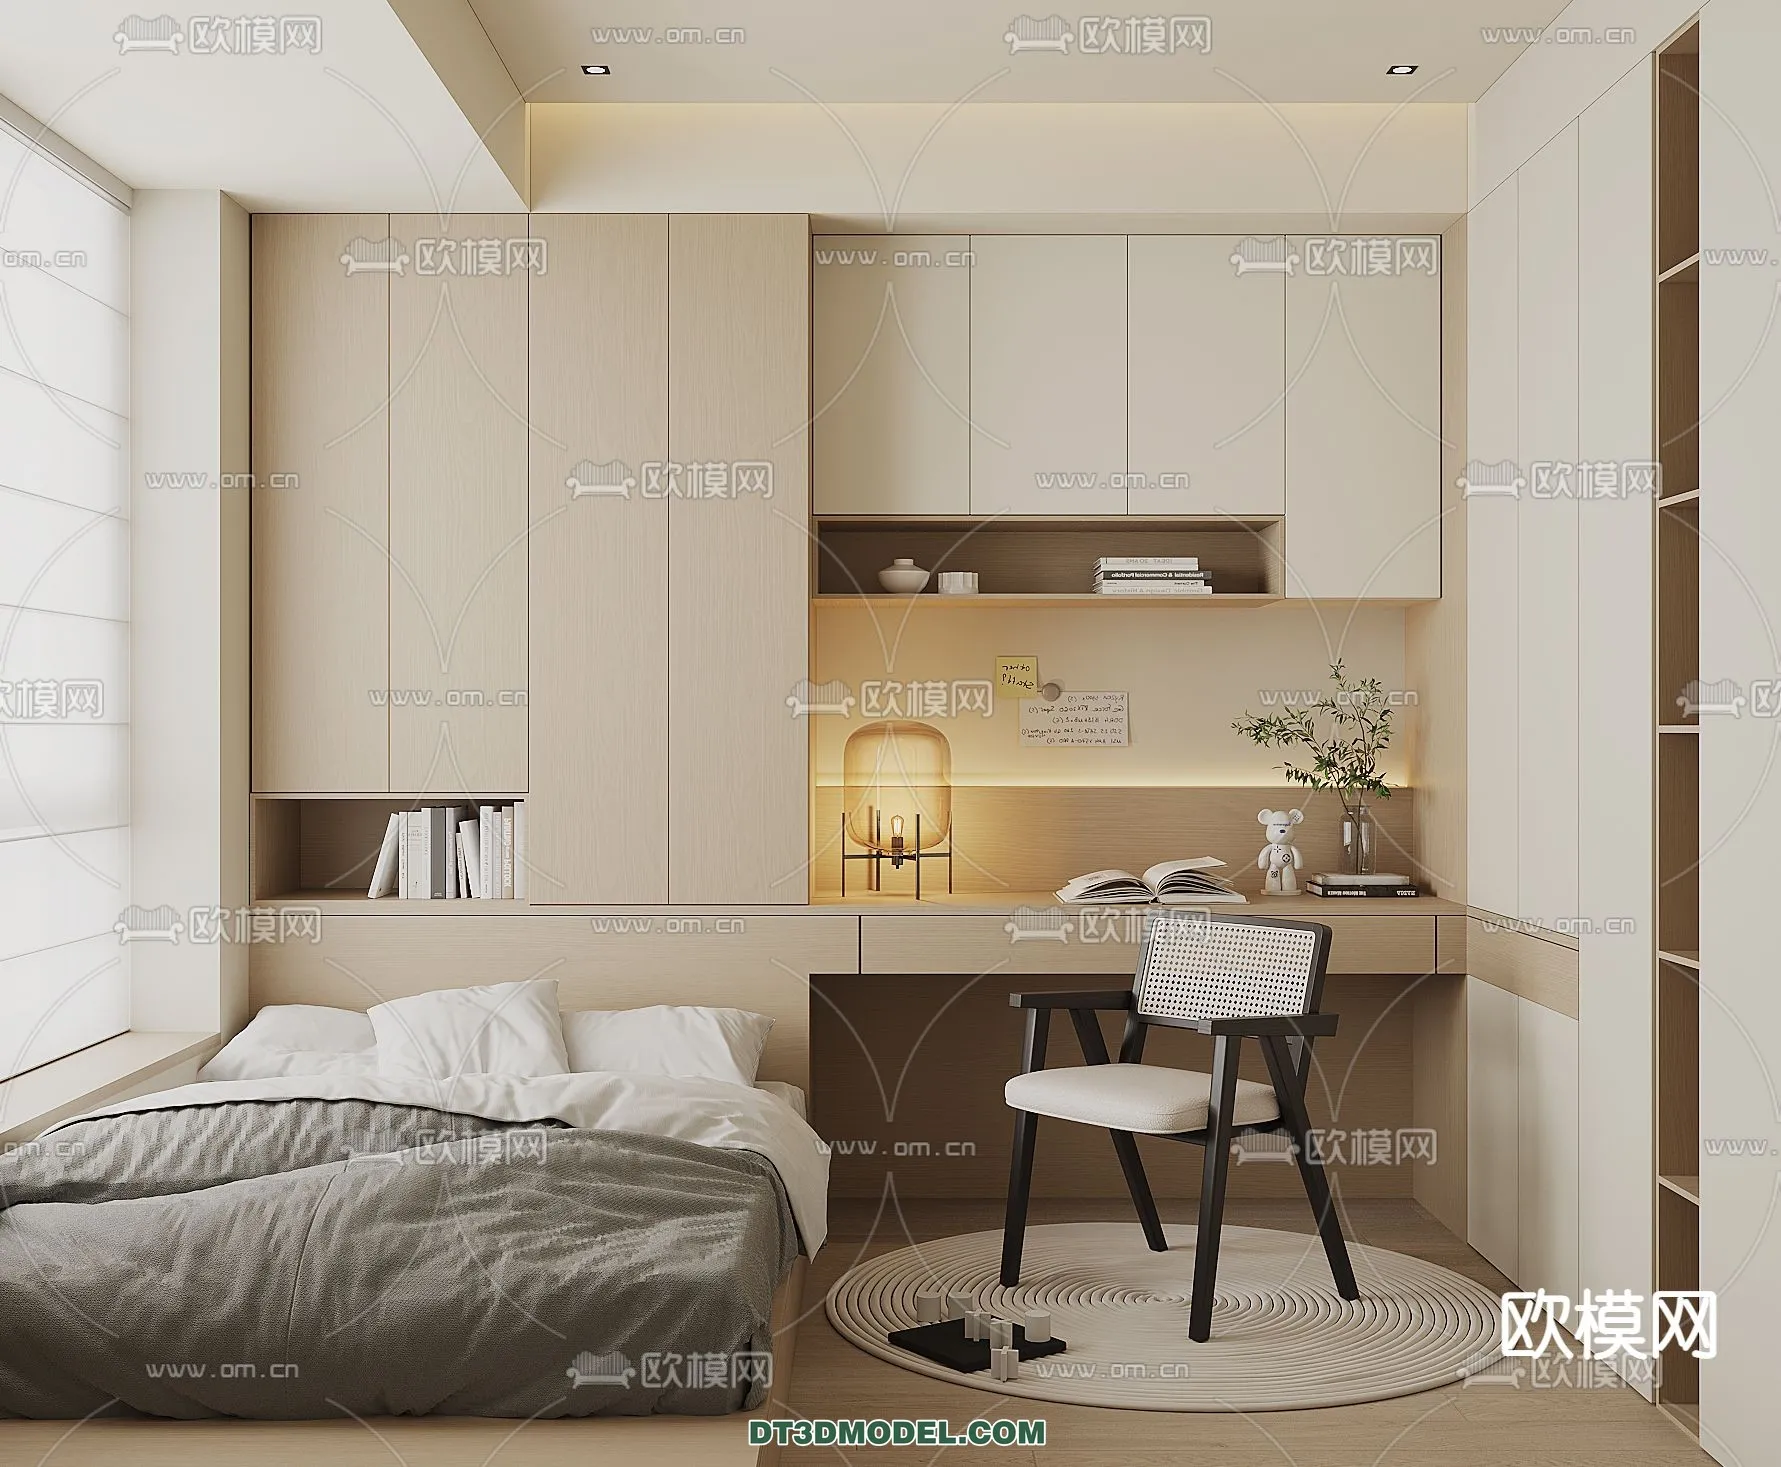 Tatami Bedroom – Japan Bedroom – 3D Scene – 017